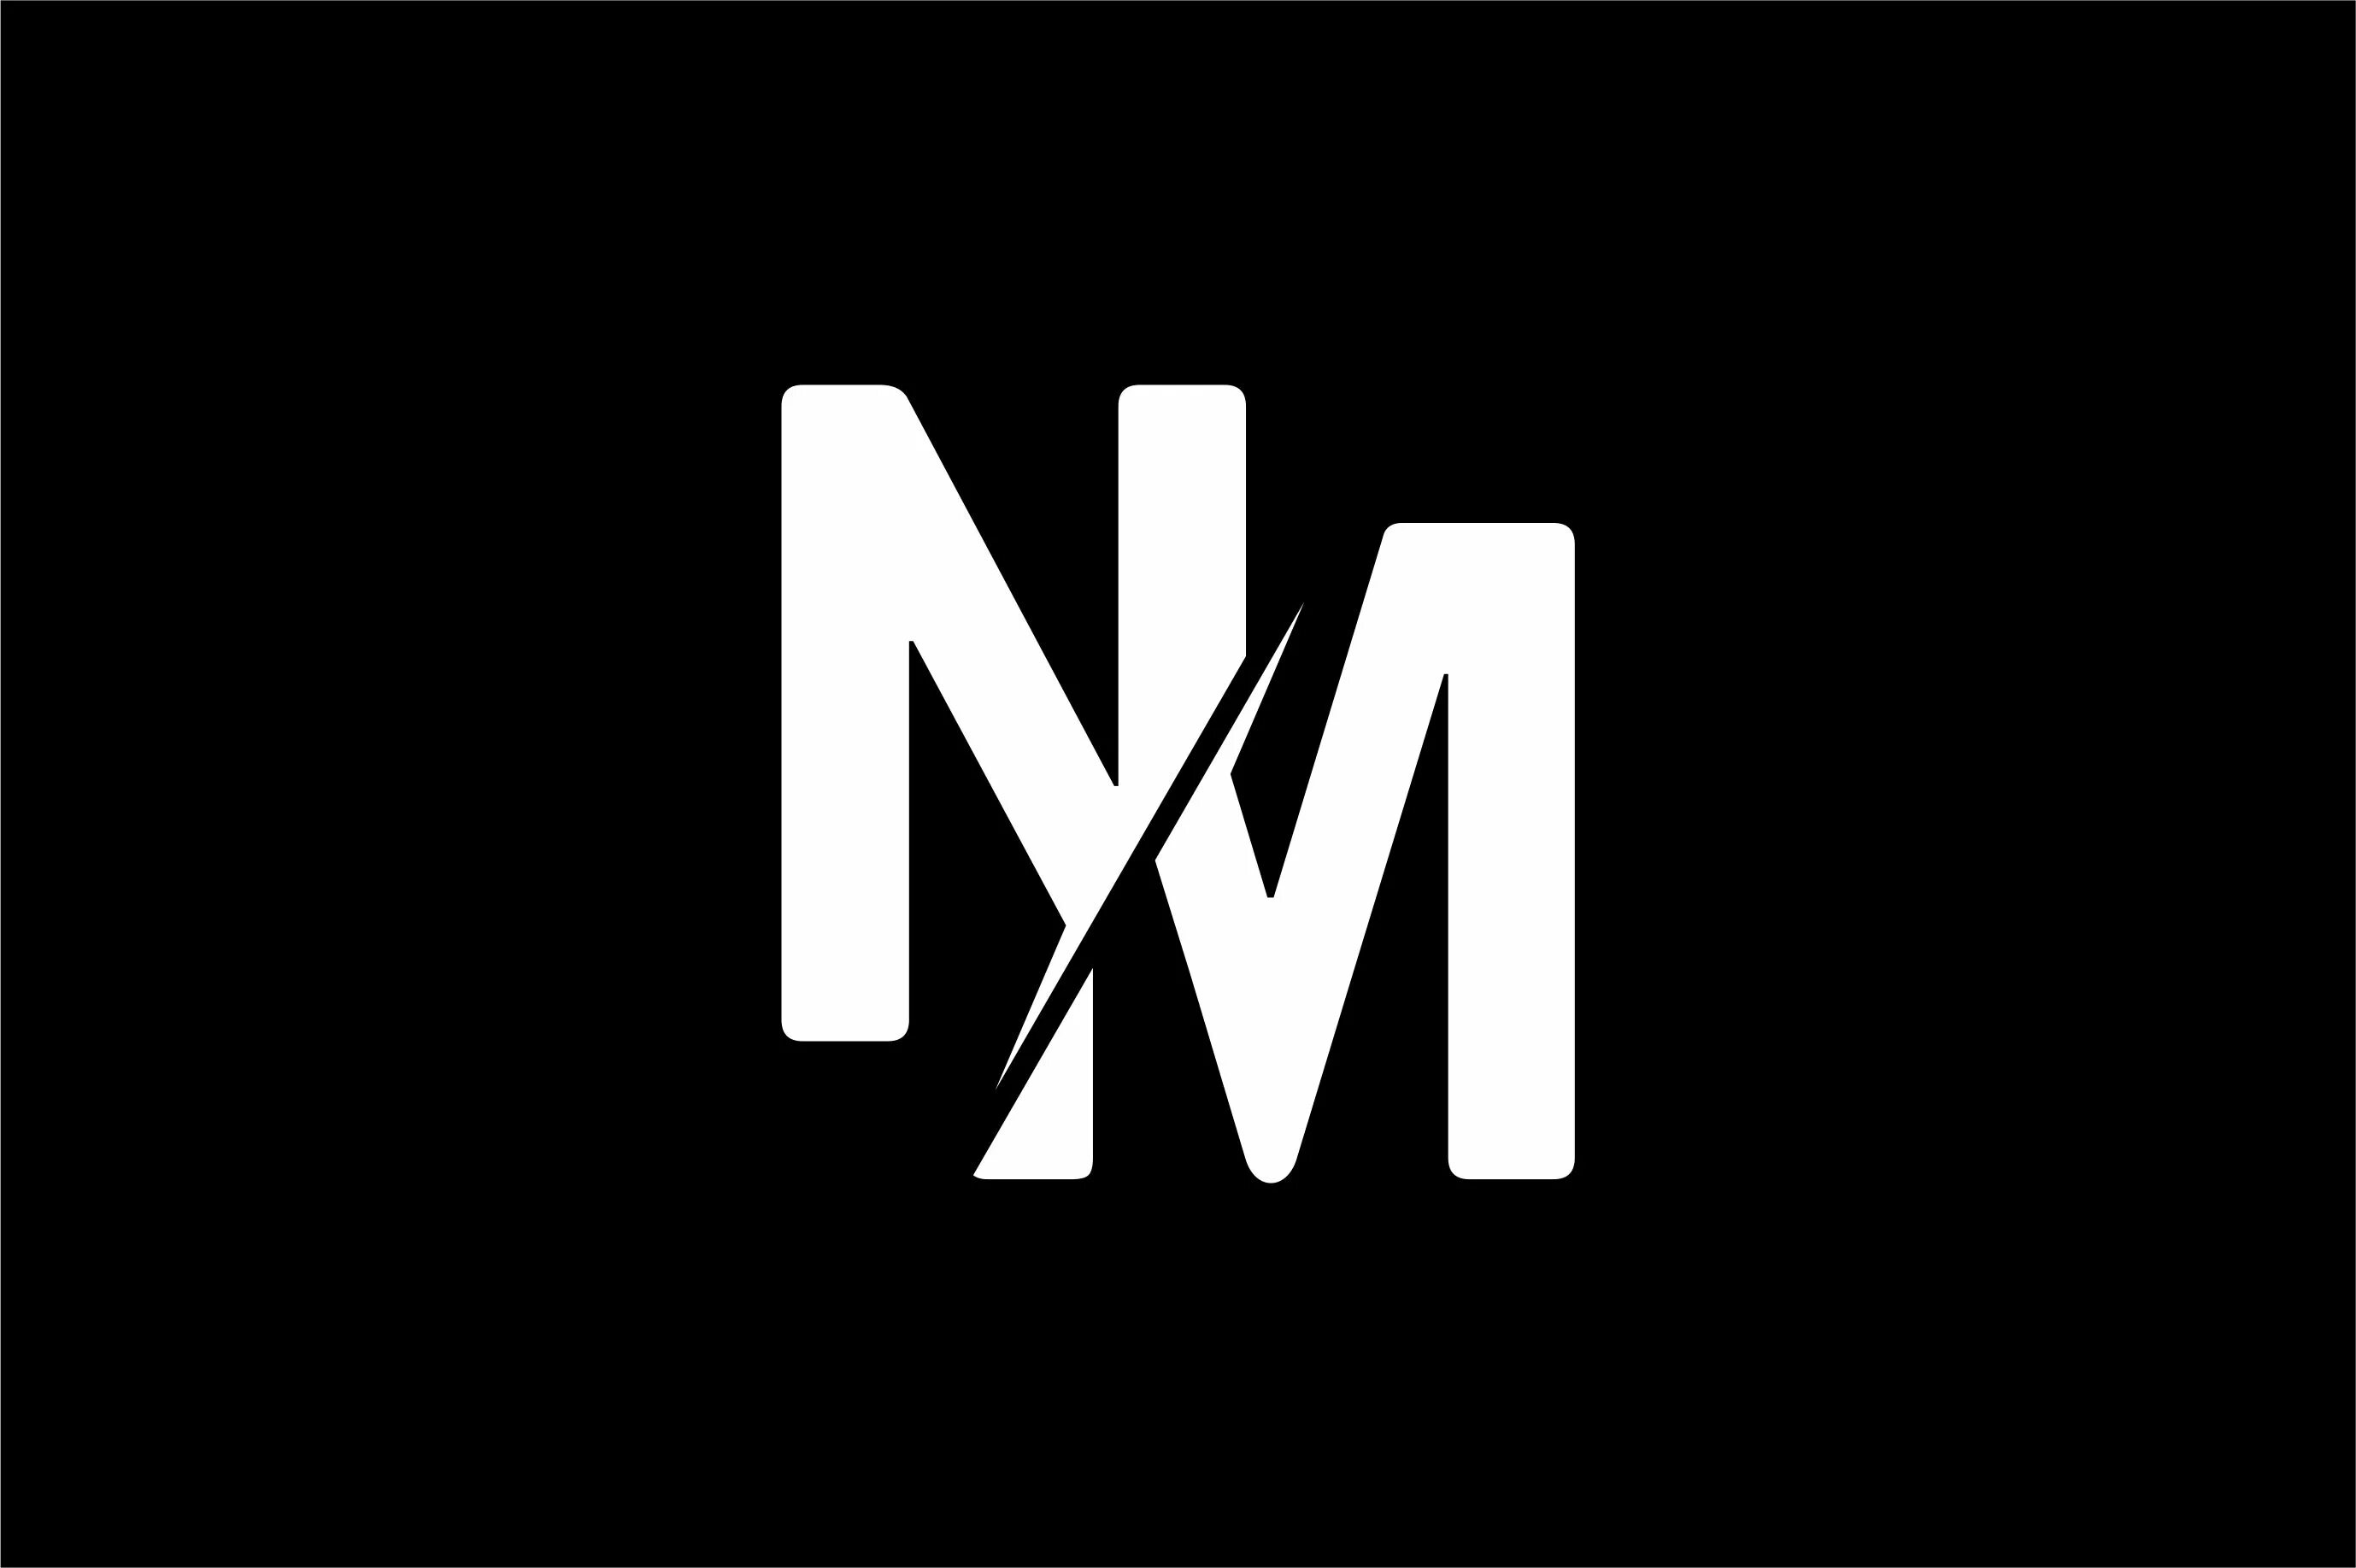 M n z 5. Логотип. РМ логотип. Эмблема с буквой м. N M логотип.